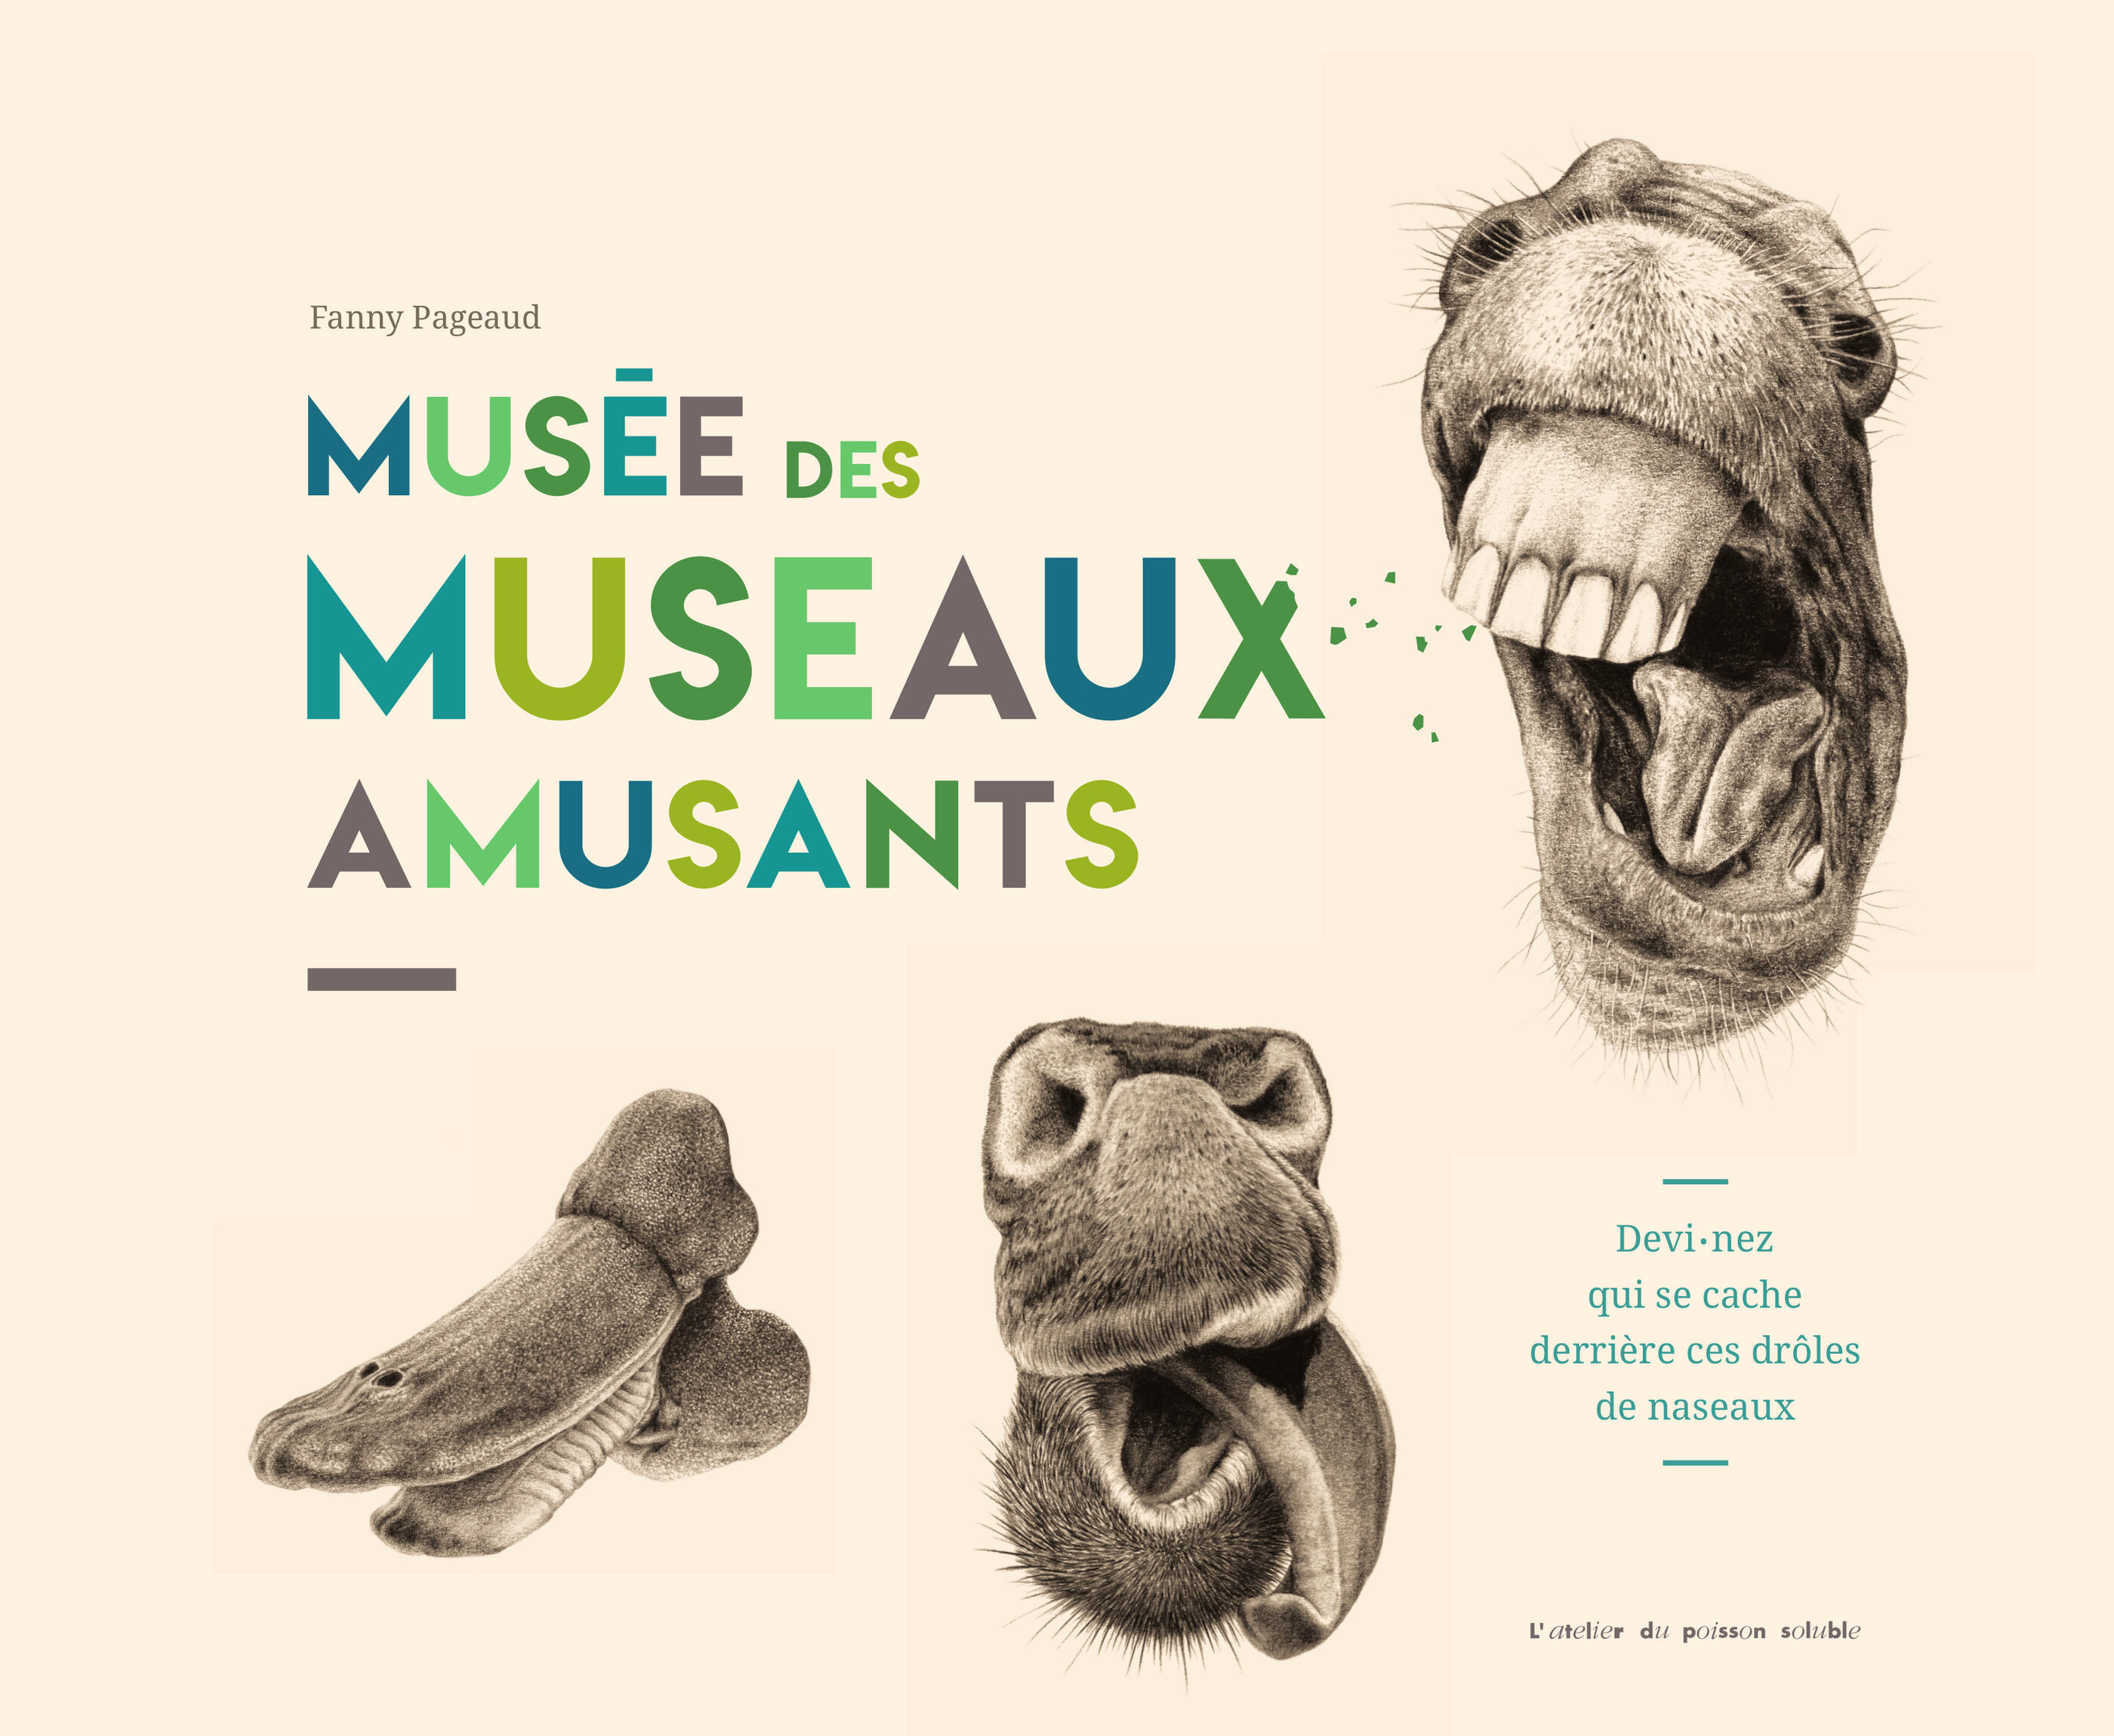 MUSEE DES MUSEAUX AMUSANTS